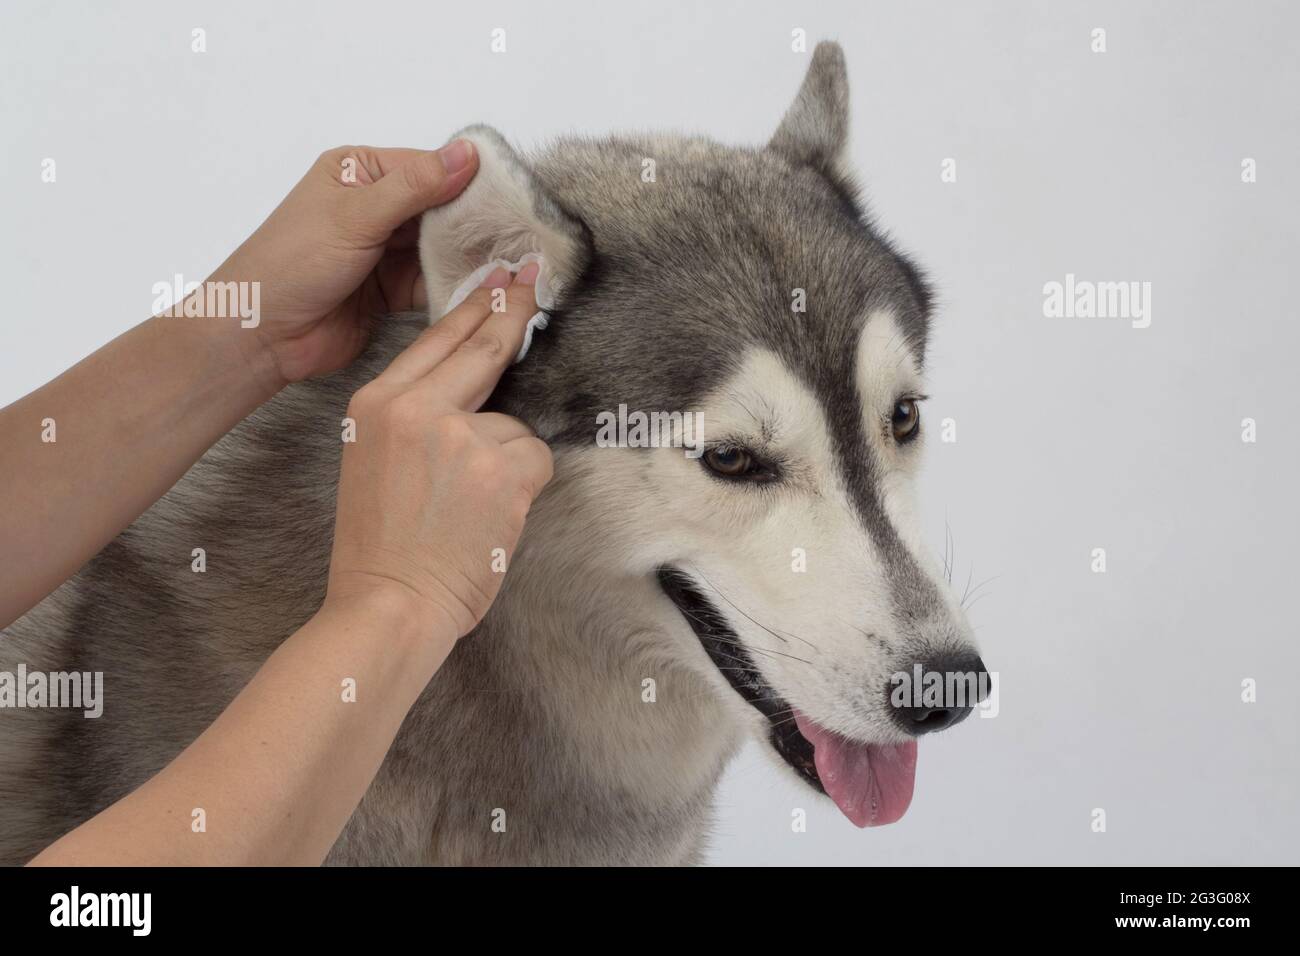 Le nettoyage des oreilles du chien avec des lingettes pour les oreilles aide à soulager les démangeaisons et à réduire les odeurs. Concept de soins de santé pour animaux de compagnie Banque D'Images